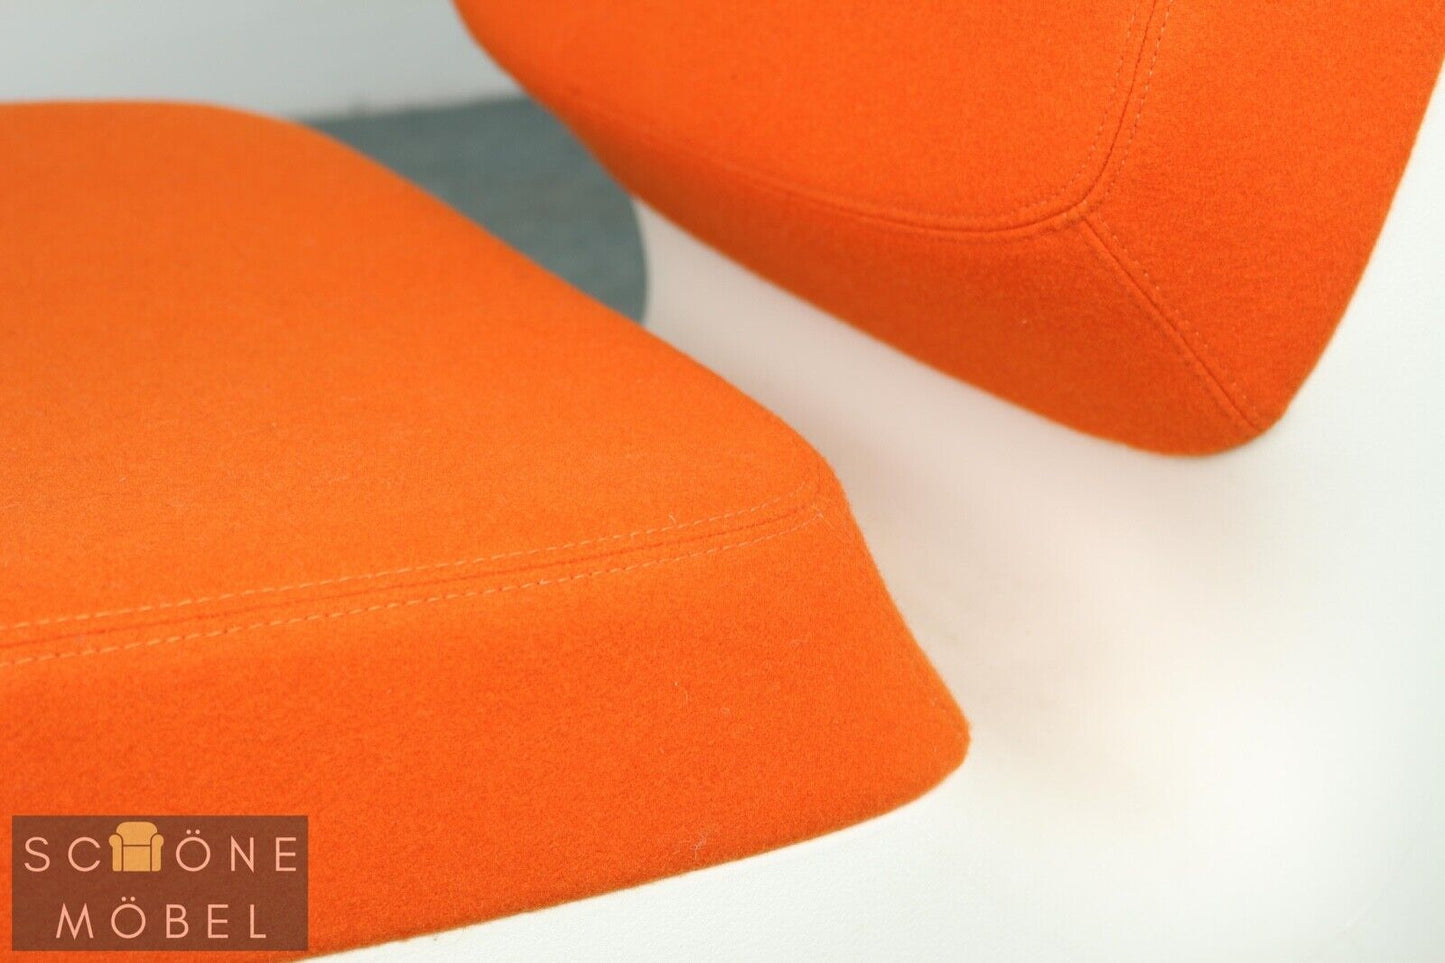 Stylische Magis Nimrod Design Sessel Marc Newson Mid Century Modern Chair orange